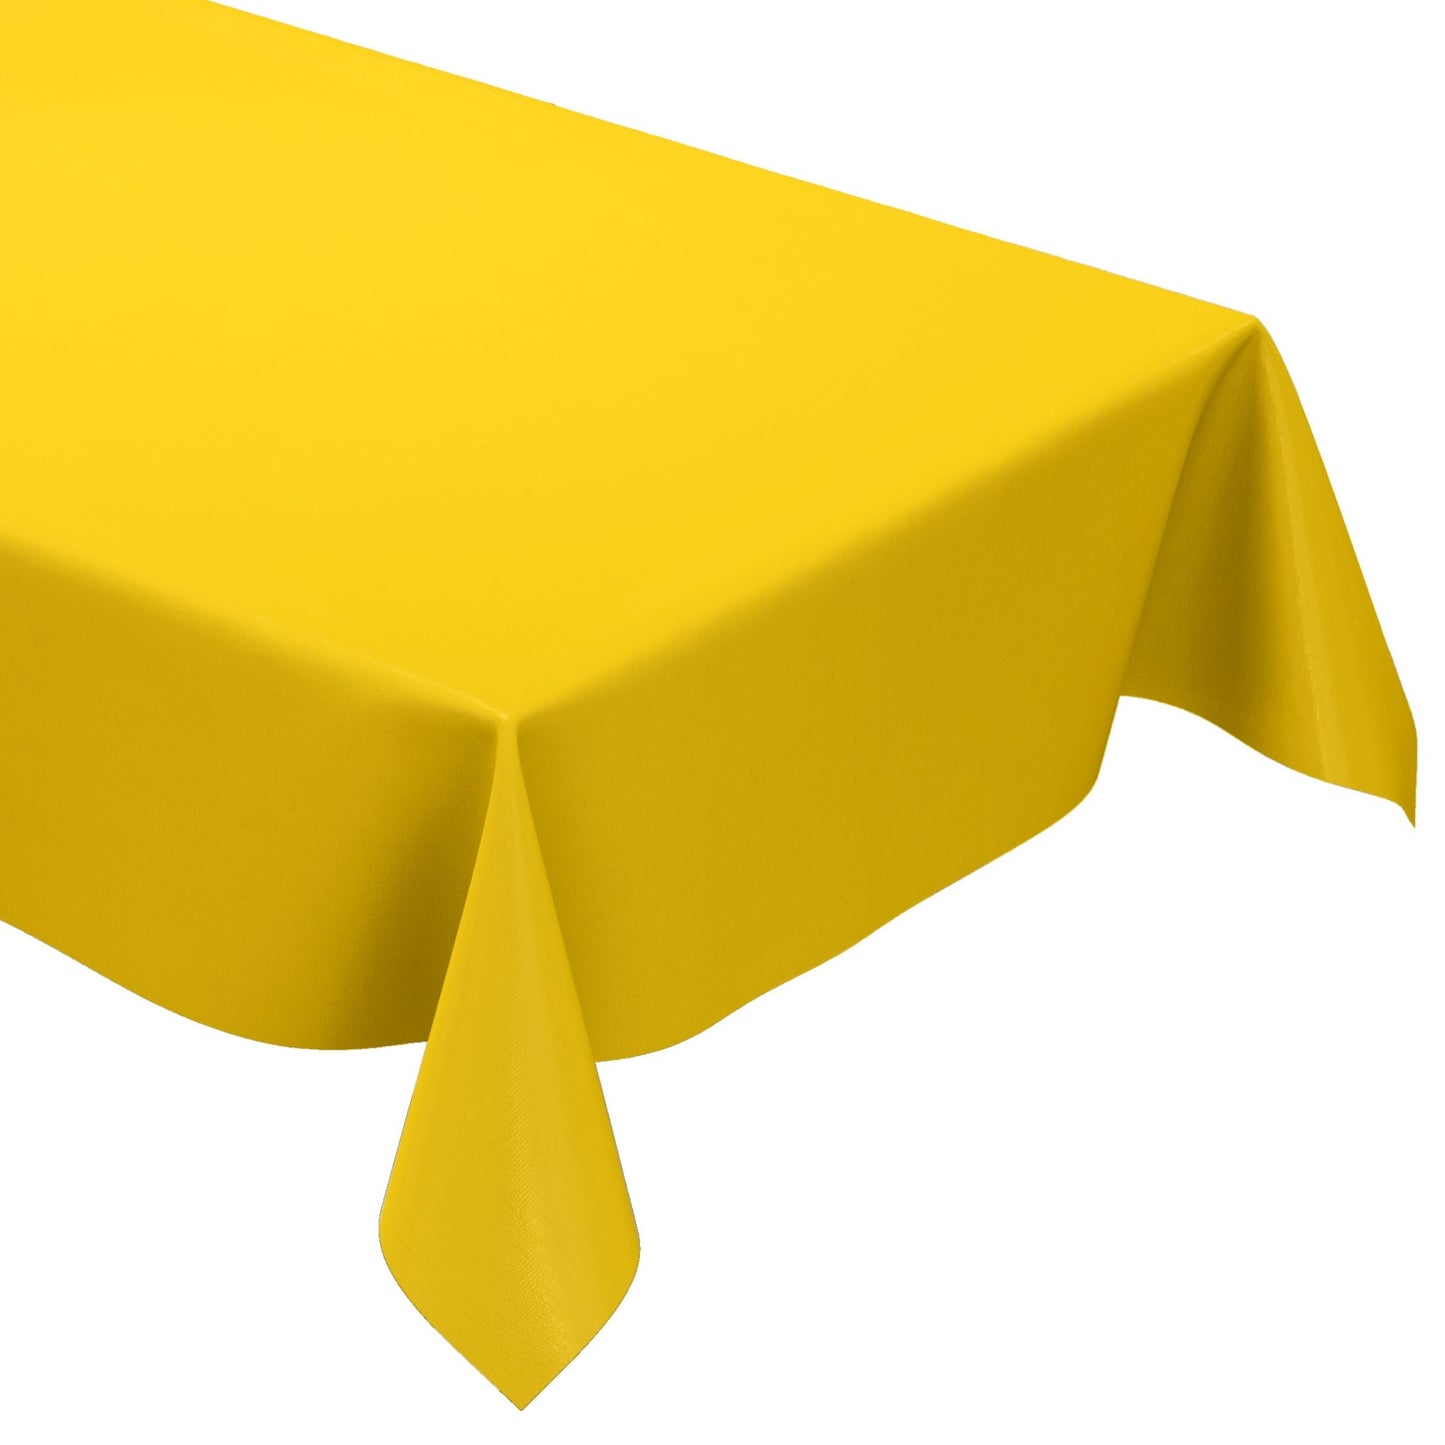 Wachstuch Tischdecke uni 109 unifarben einfarbig gelb eckig rund oval